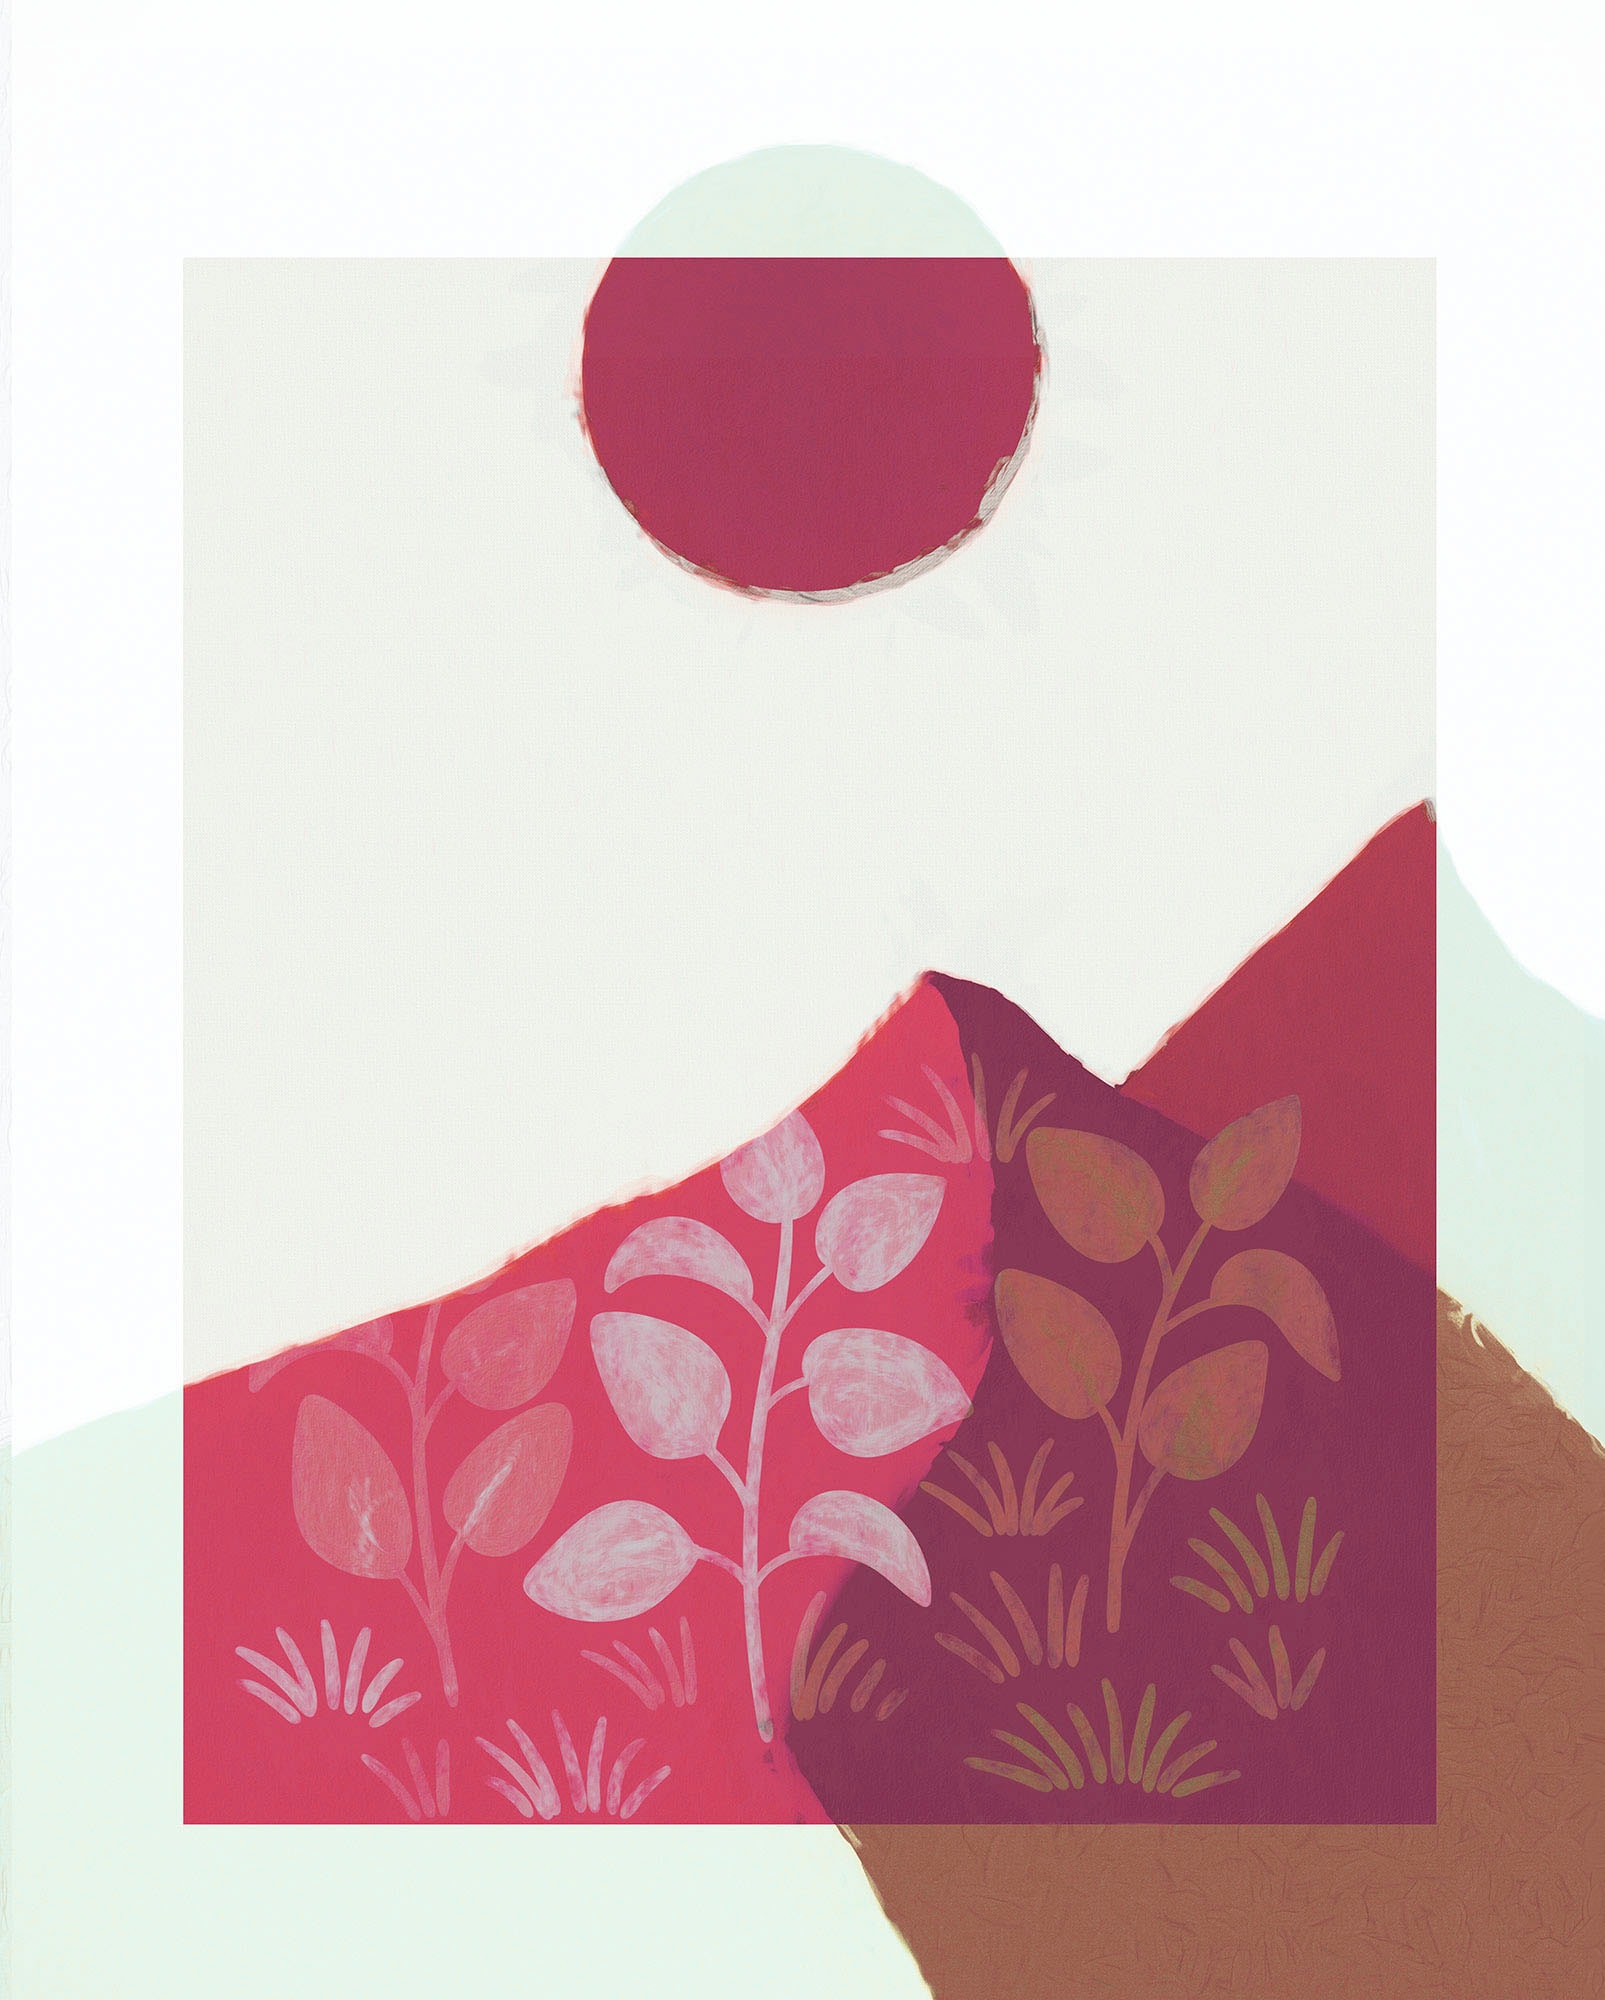 Komar Wandbild »Plant a Garden«, (1 St.), Deutsches Premium-Poster Fotopapier mit seidenmatter Oberfläche und hoher Lichtbeständigkeit. Für fotorealistische Drucke mit gestochen scharfen Details und hervorragender Farbbrillanz. von Komar